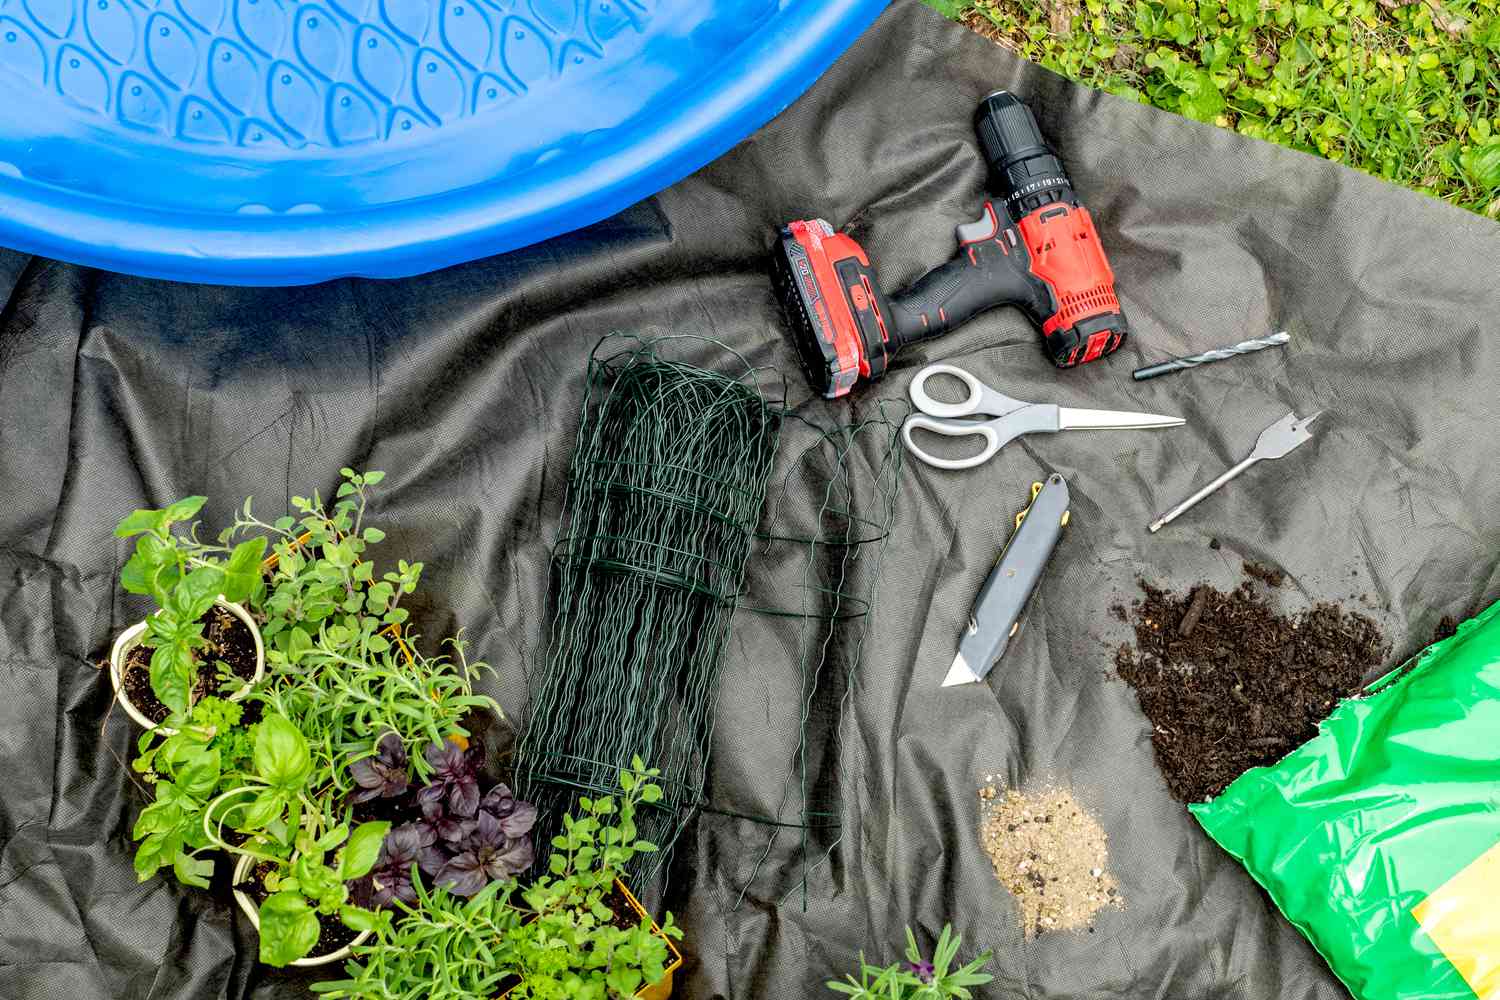 Materialien und Werkzeuge zum Anlegen eines Gartens in einem Kinderbecken